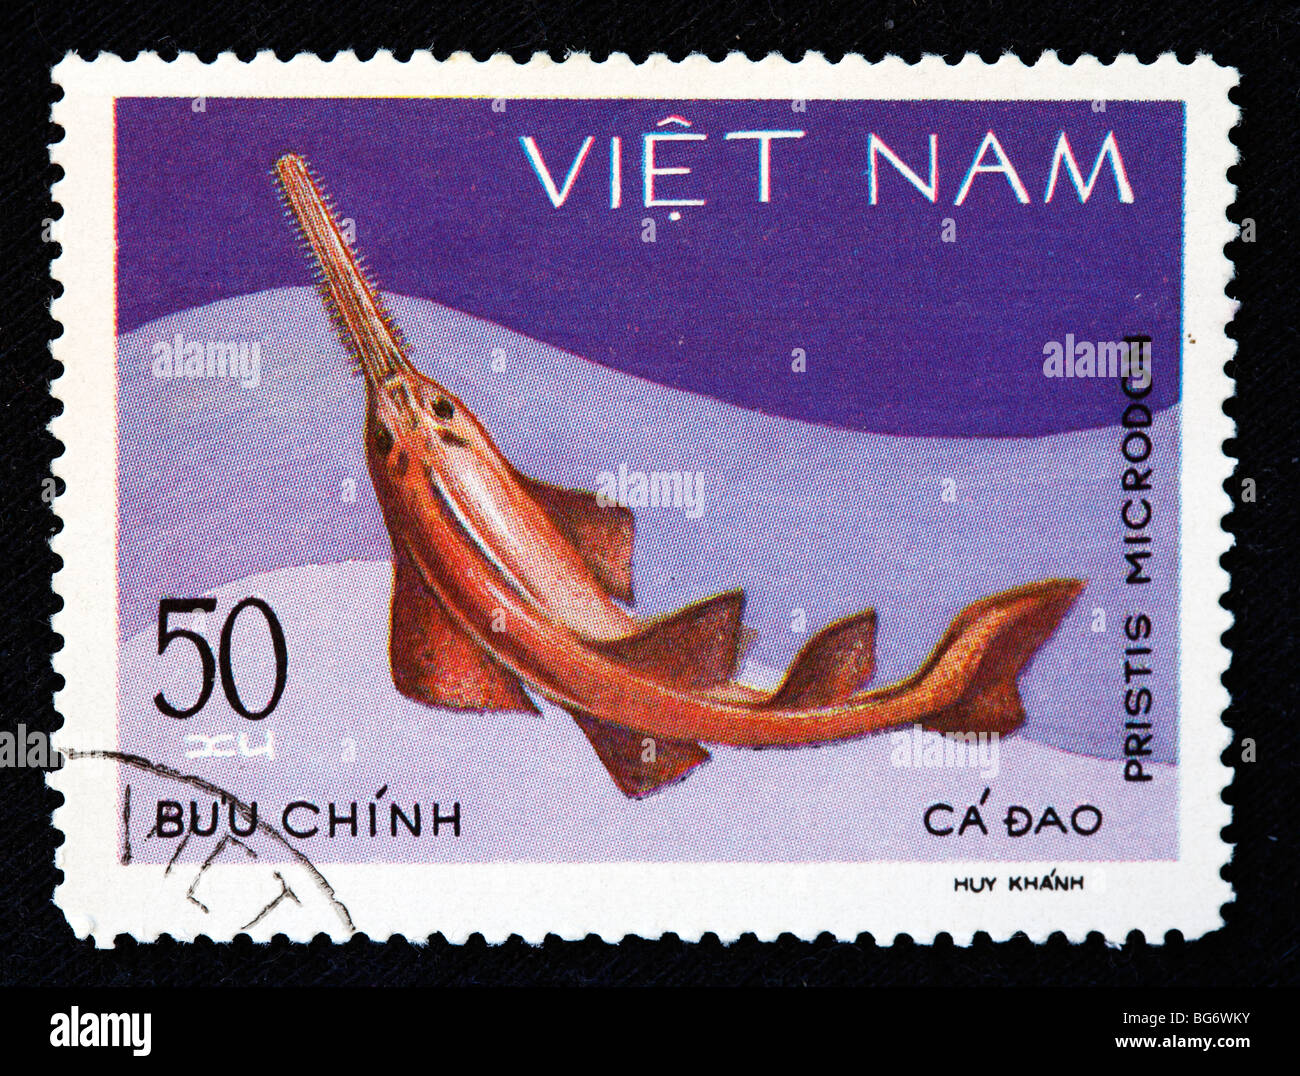 Largetooth sawfish (Pristis microdon), postage stamp, Vietnam Stock Photo